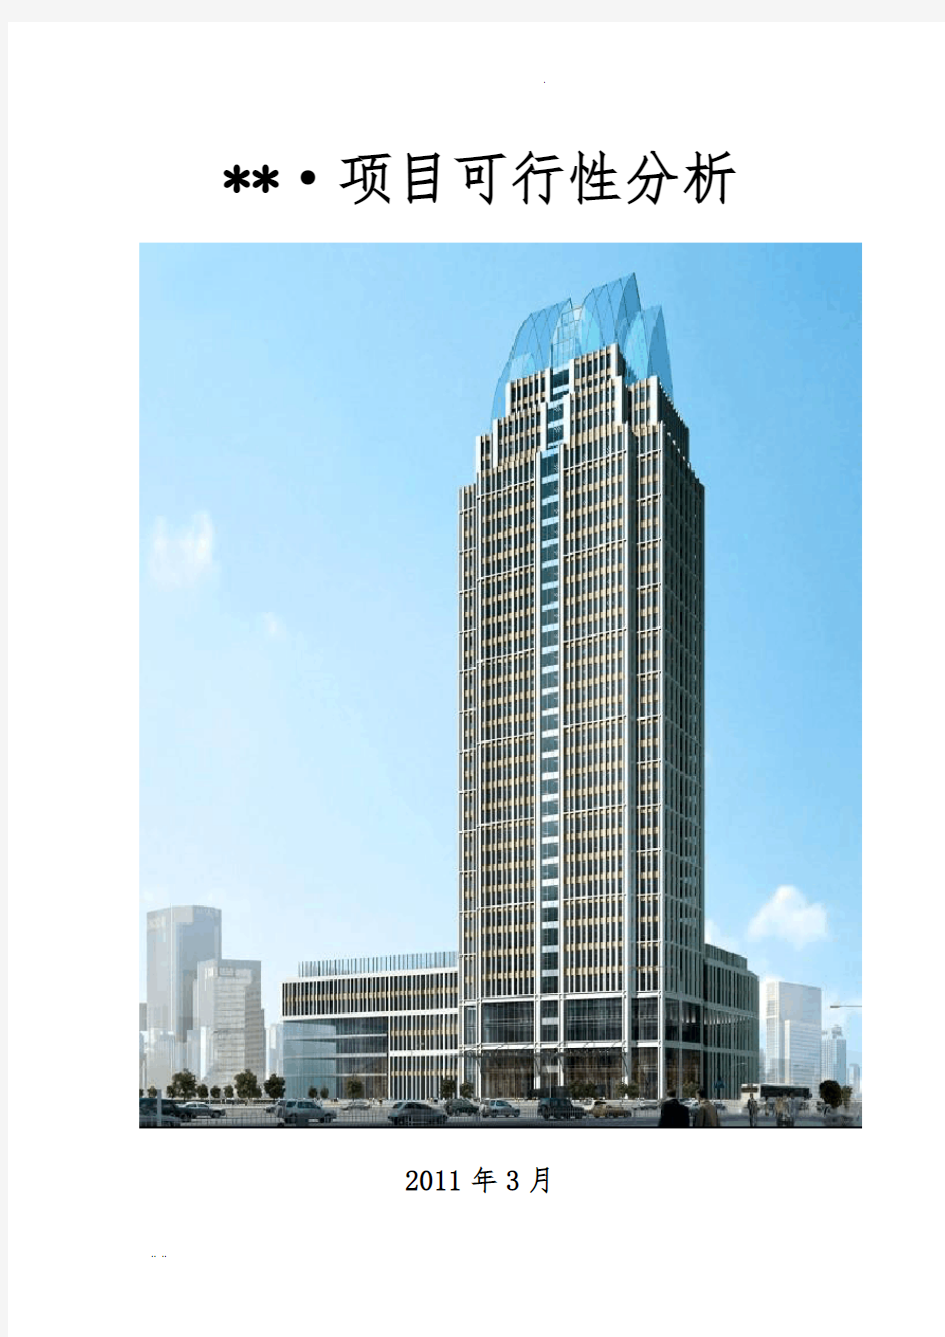 青山区城市综合体5星级酒店项目可行性分析